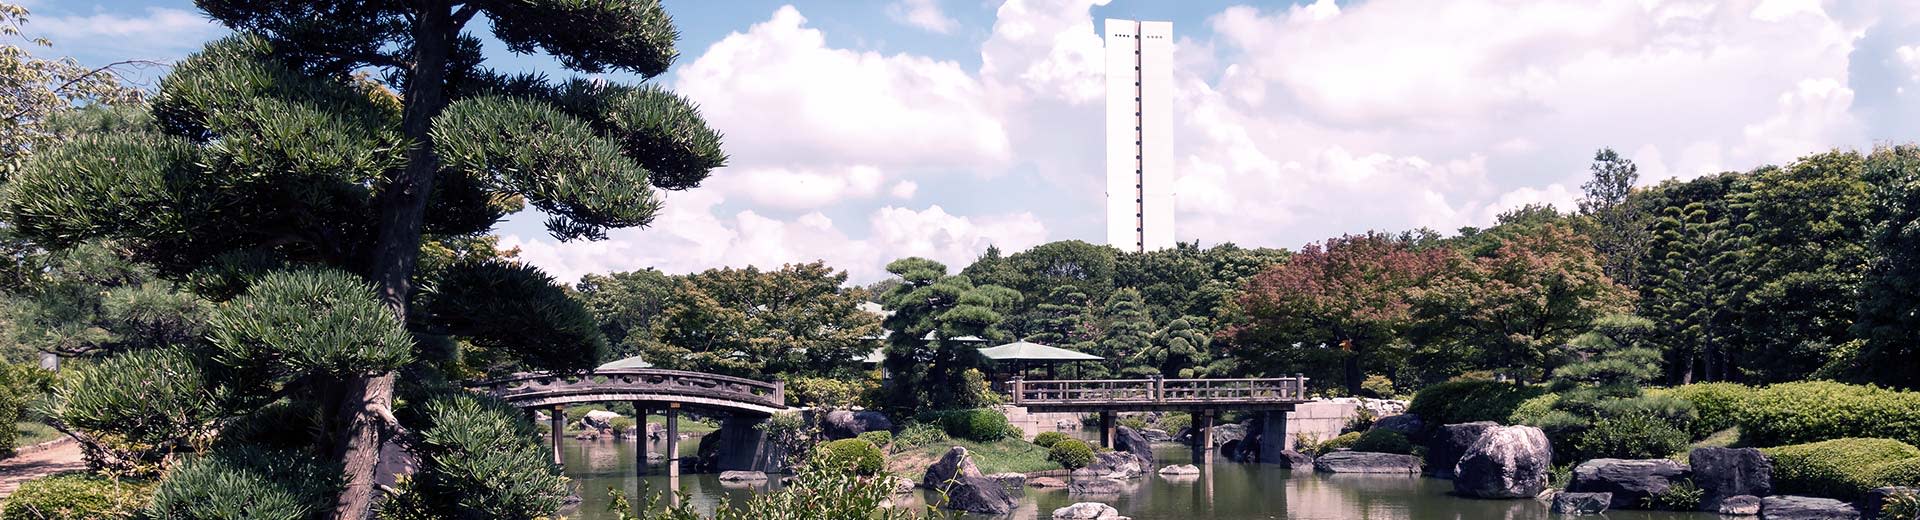 画面以传统的绿色日式花园为主，背景中隐约可见一座白色建筑。